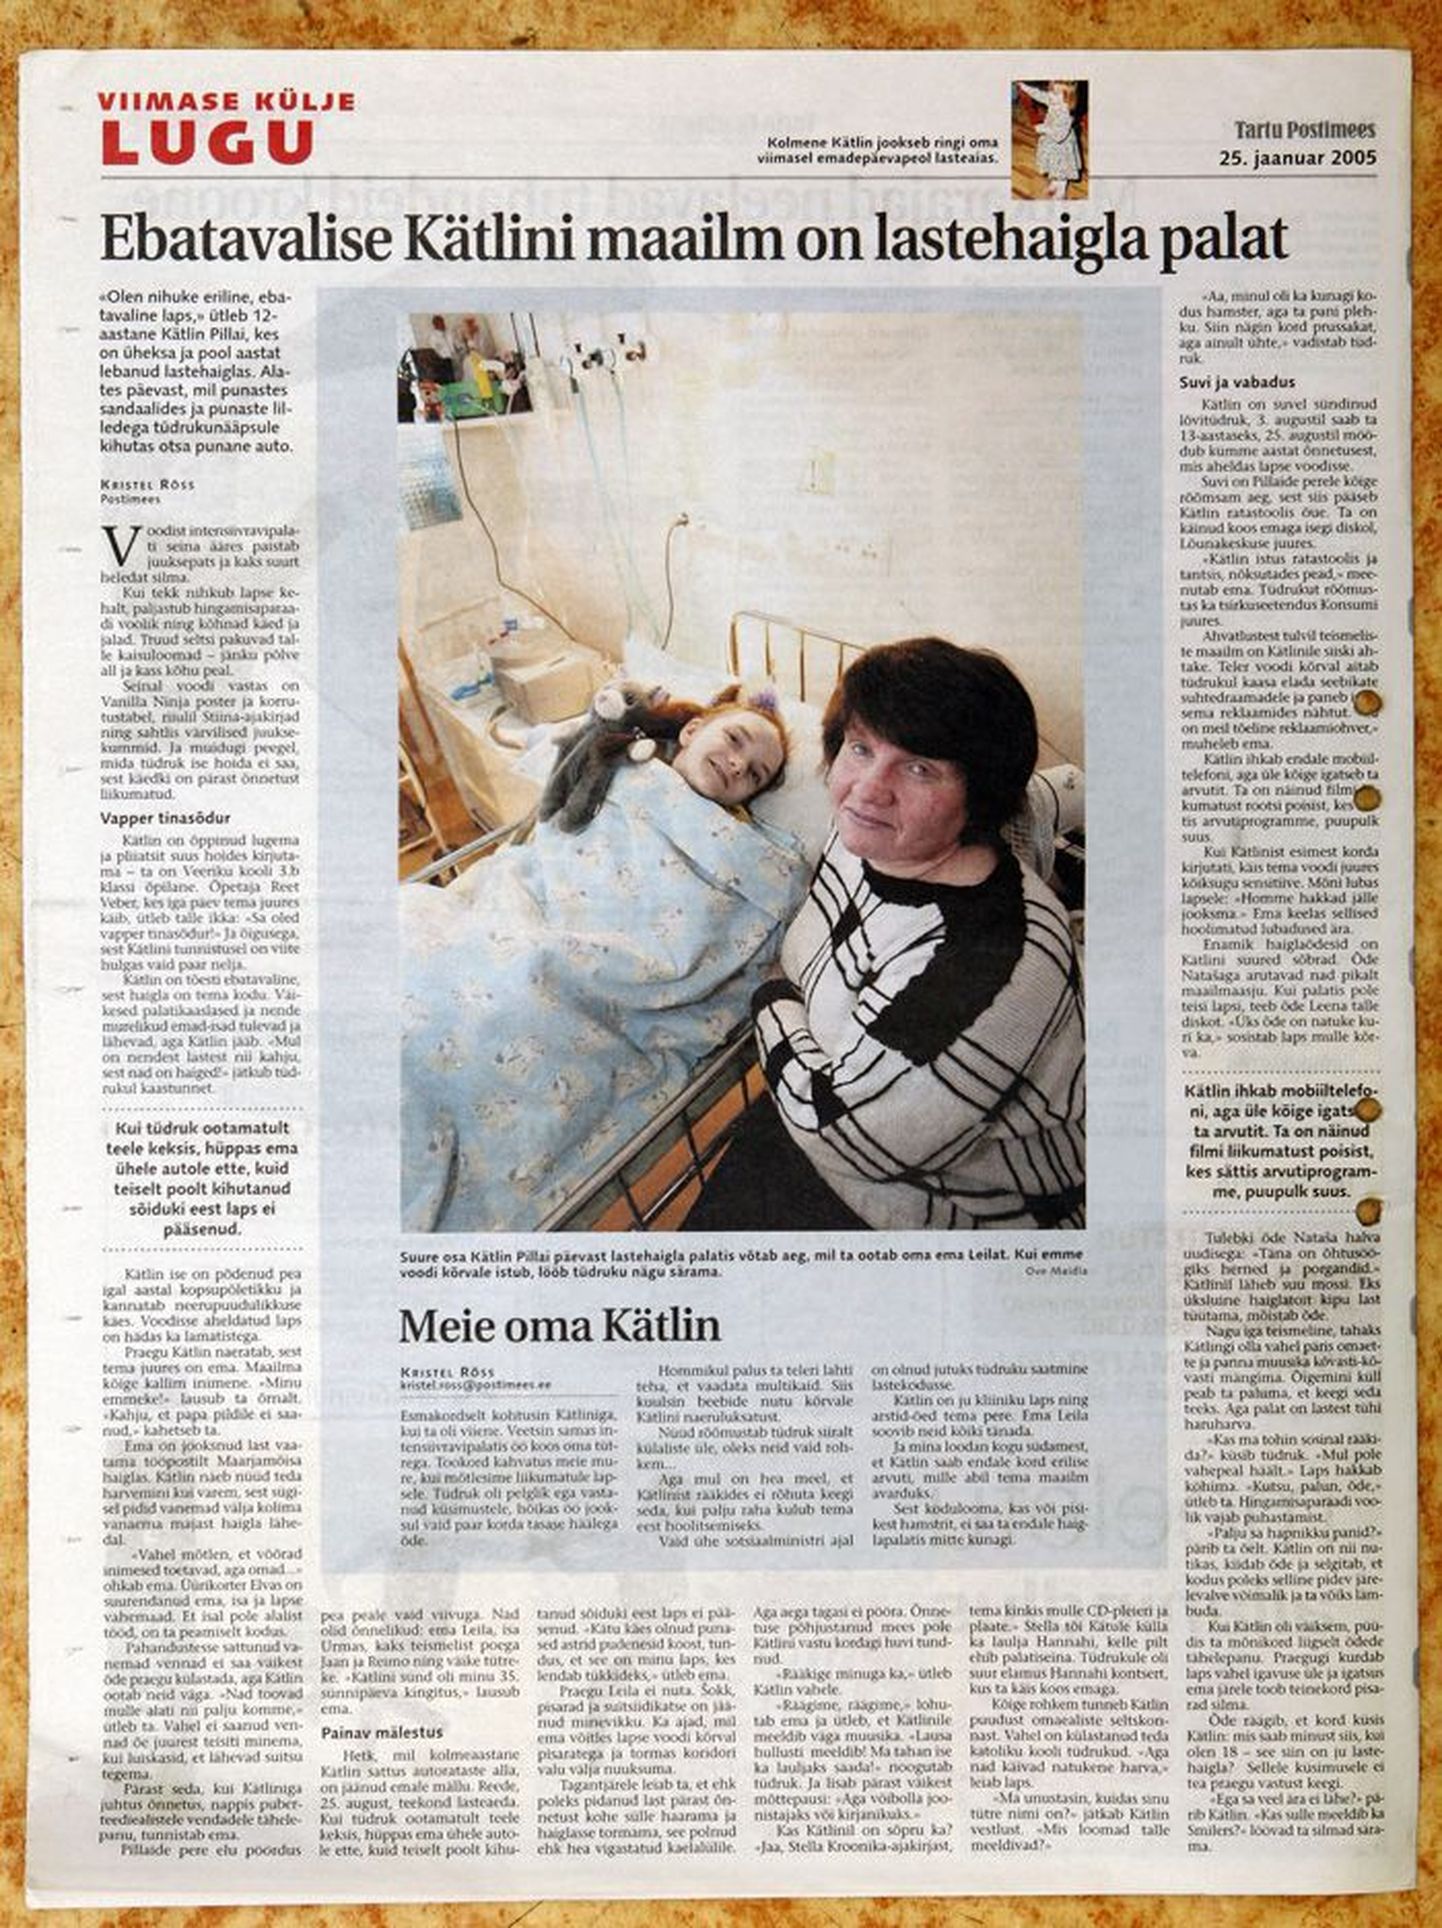 Hetk, mil kolmeaastane Kätlin sattus autorataste alla, on jäänud emale mällu. Kui tüdruk ootamatult teele keksis, hüppas ema ühele autole ette, kuid teiselt poolt kihutanud sõiduki eest laps ei pääsenud. «Kätu käes olnud punased astrid pudenesid koost, tundus, et see on minu laps, kes lendab tükkideks,» ütleb ema. 
25. jaanuar 2005, Tartu Postimees